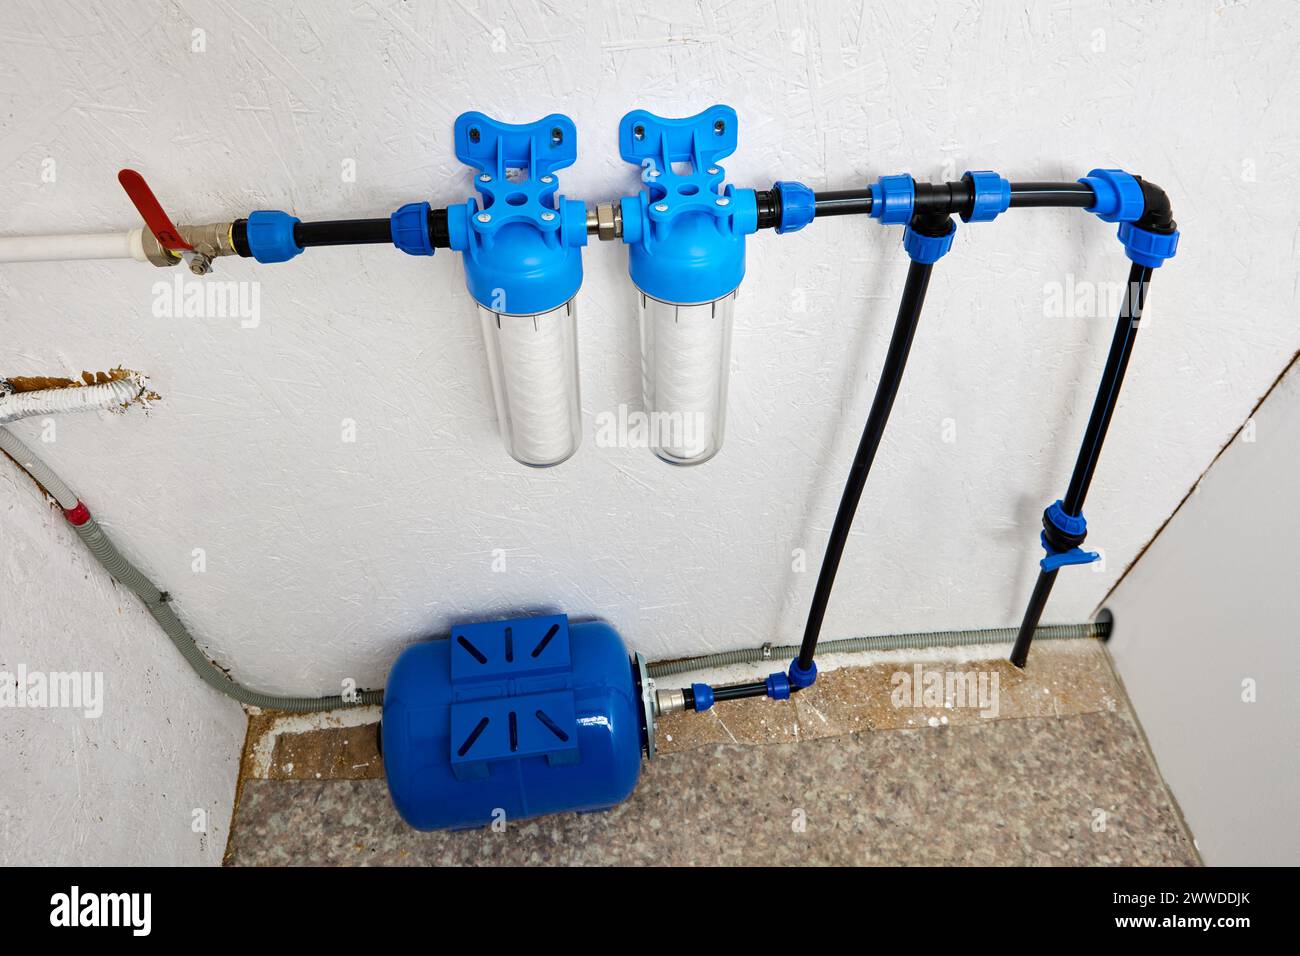 Der Versorgungsraum, der kaltes Trinkwasser vom Standort über das Hauswasserversorgungssystem erhält, ist mit einem Drucktank und einer Wasserreinigung ausgestattet Stockfoto